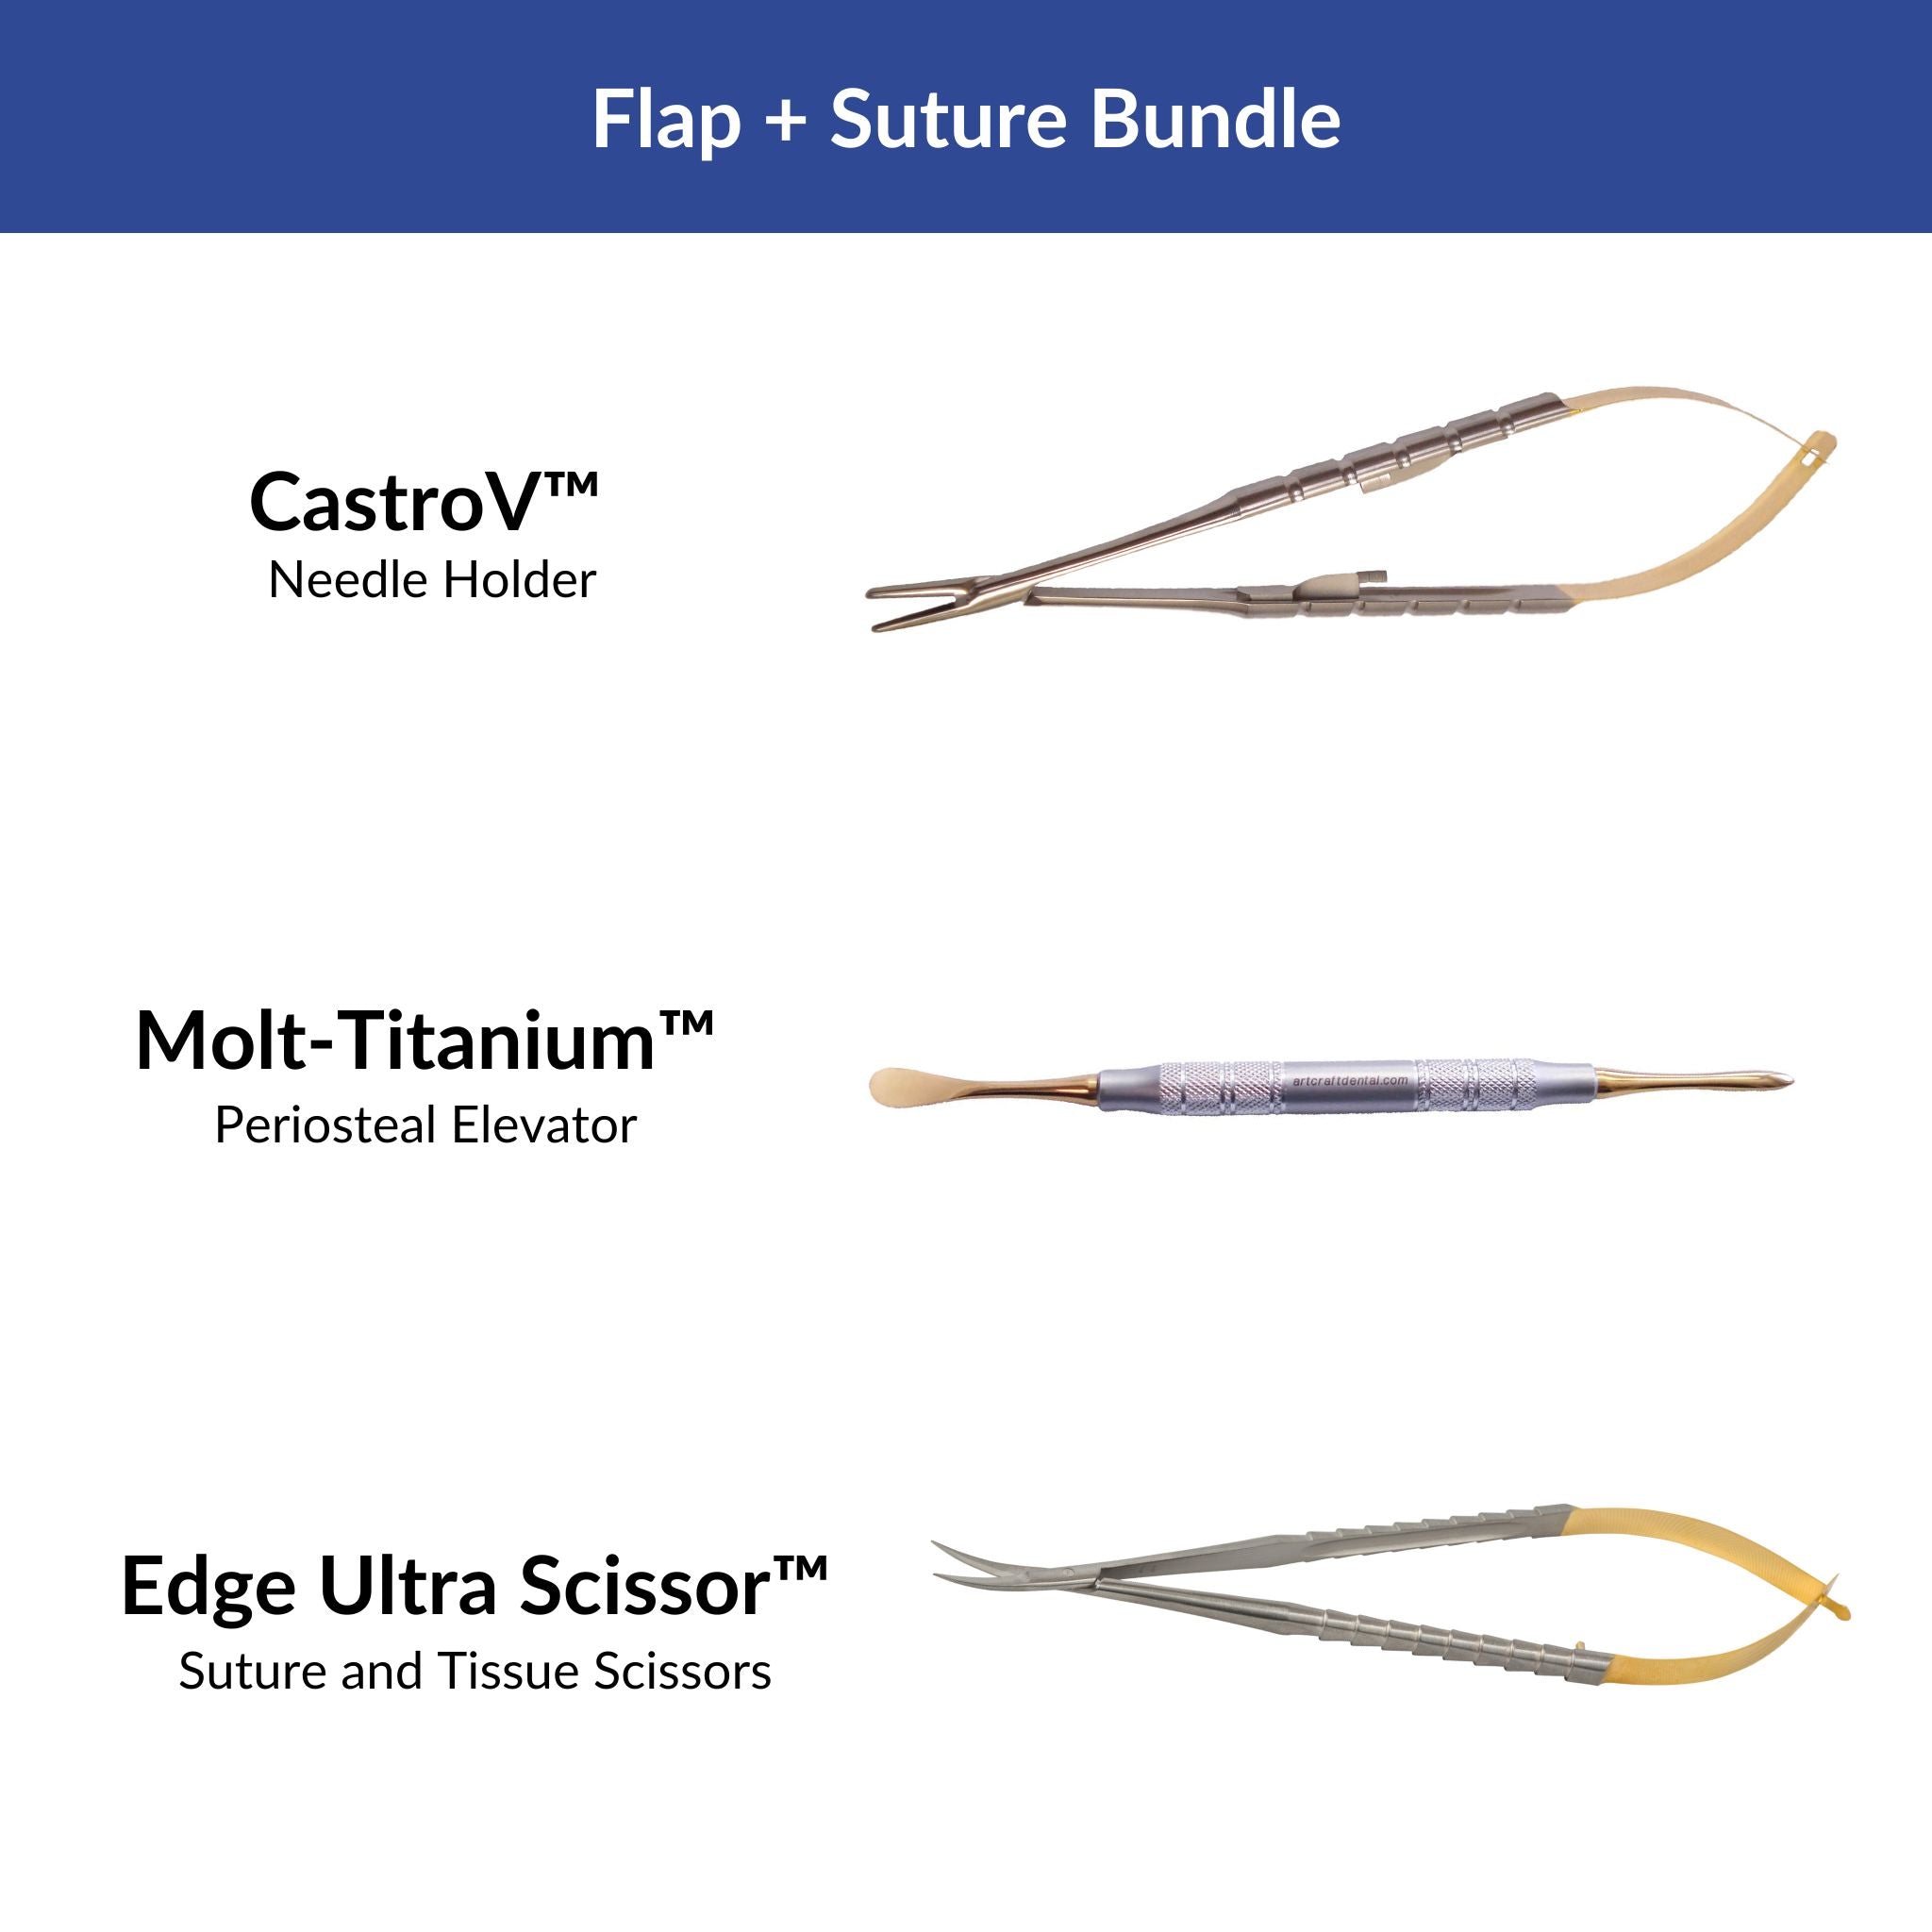 Flap & Suture Bundle